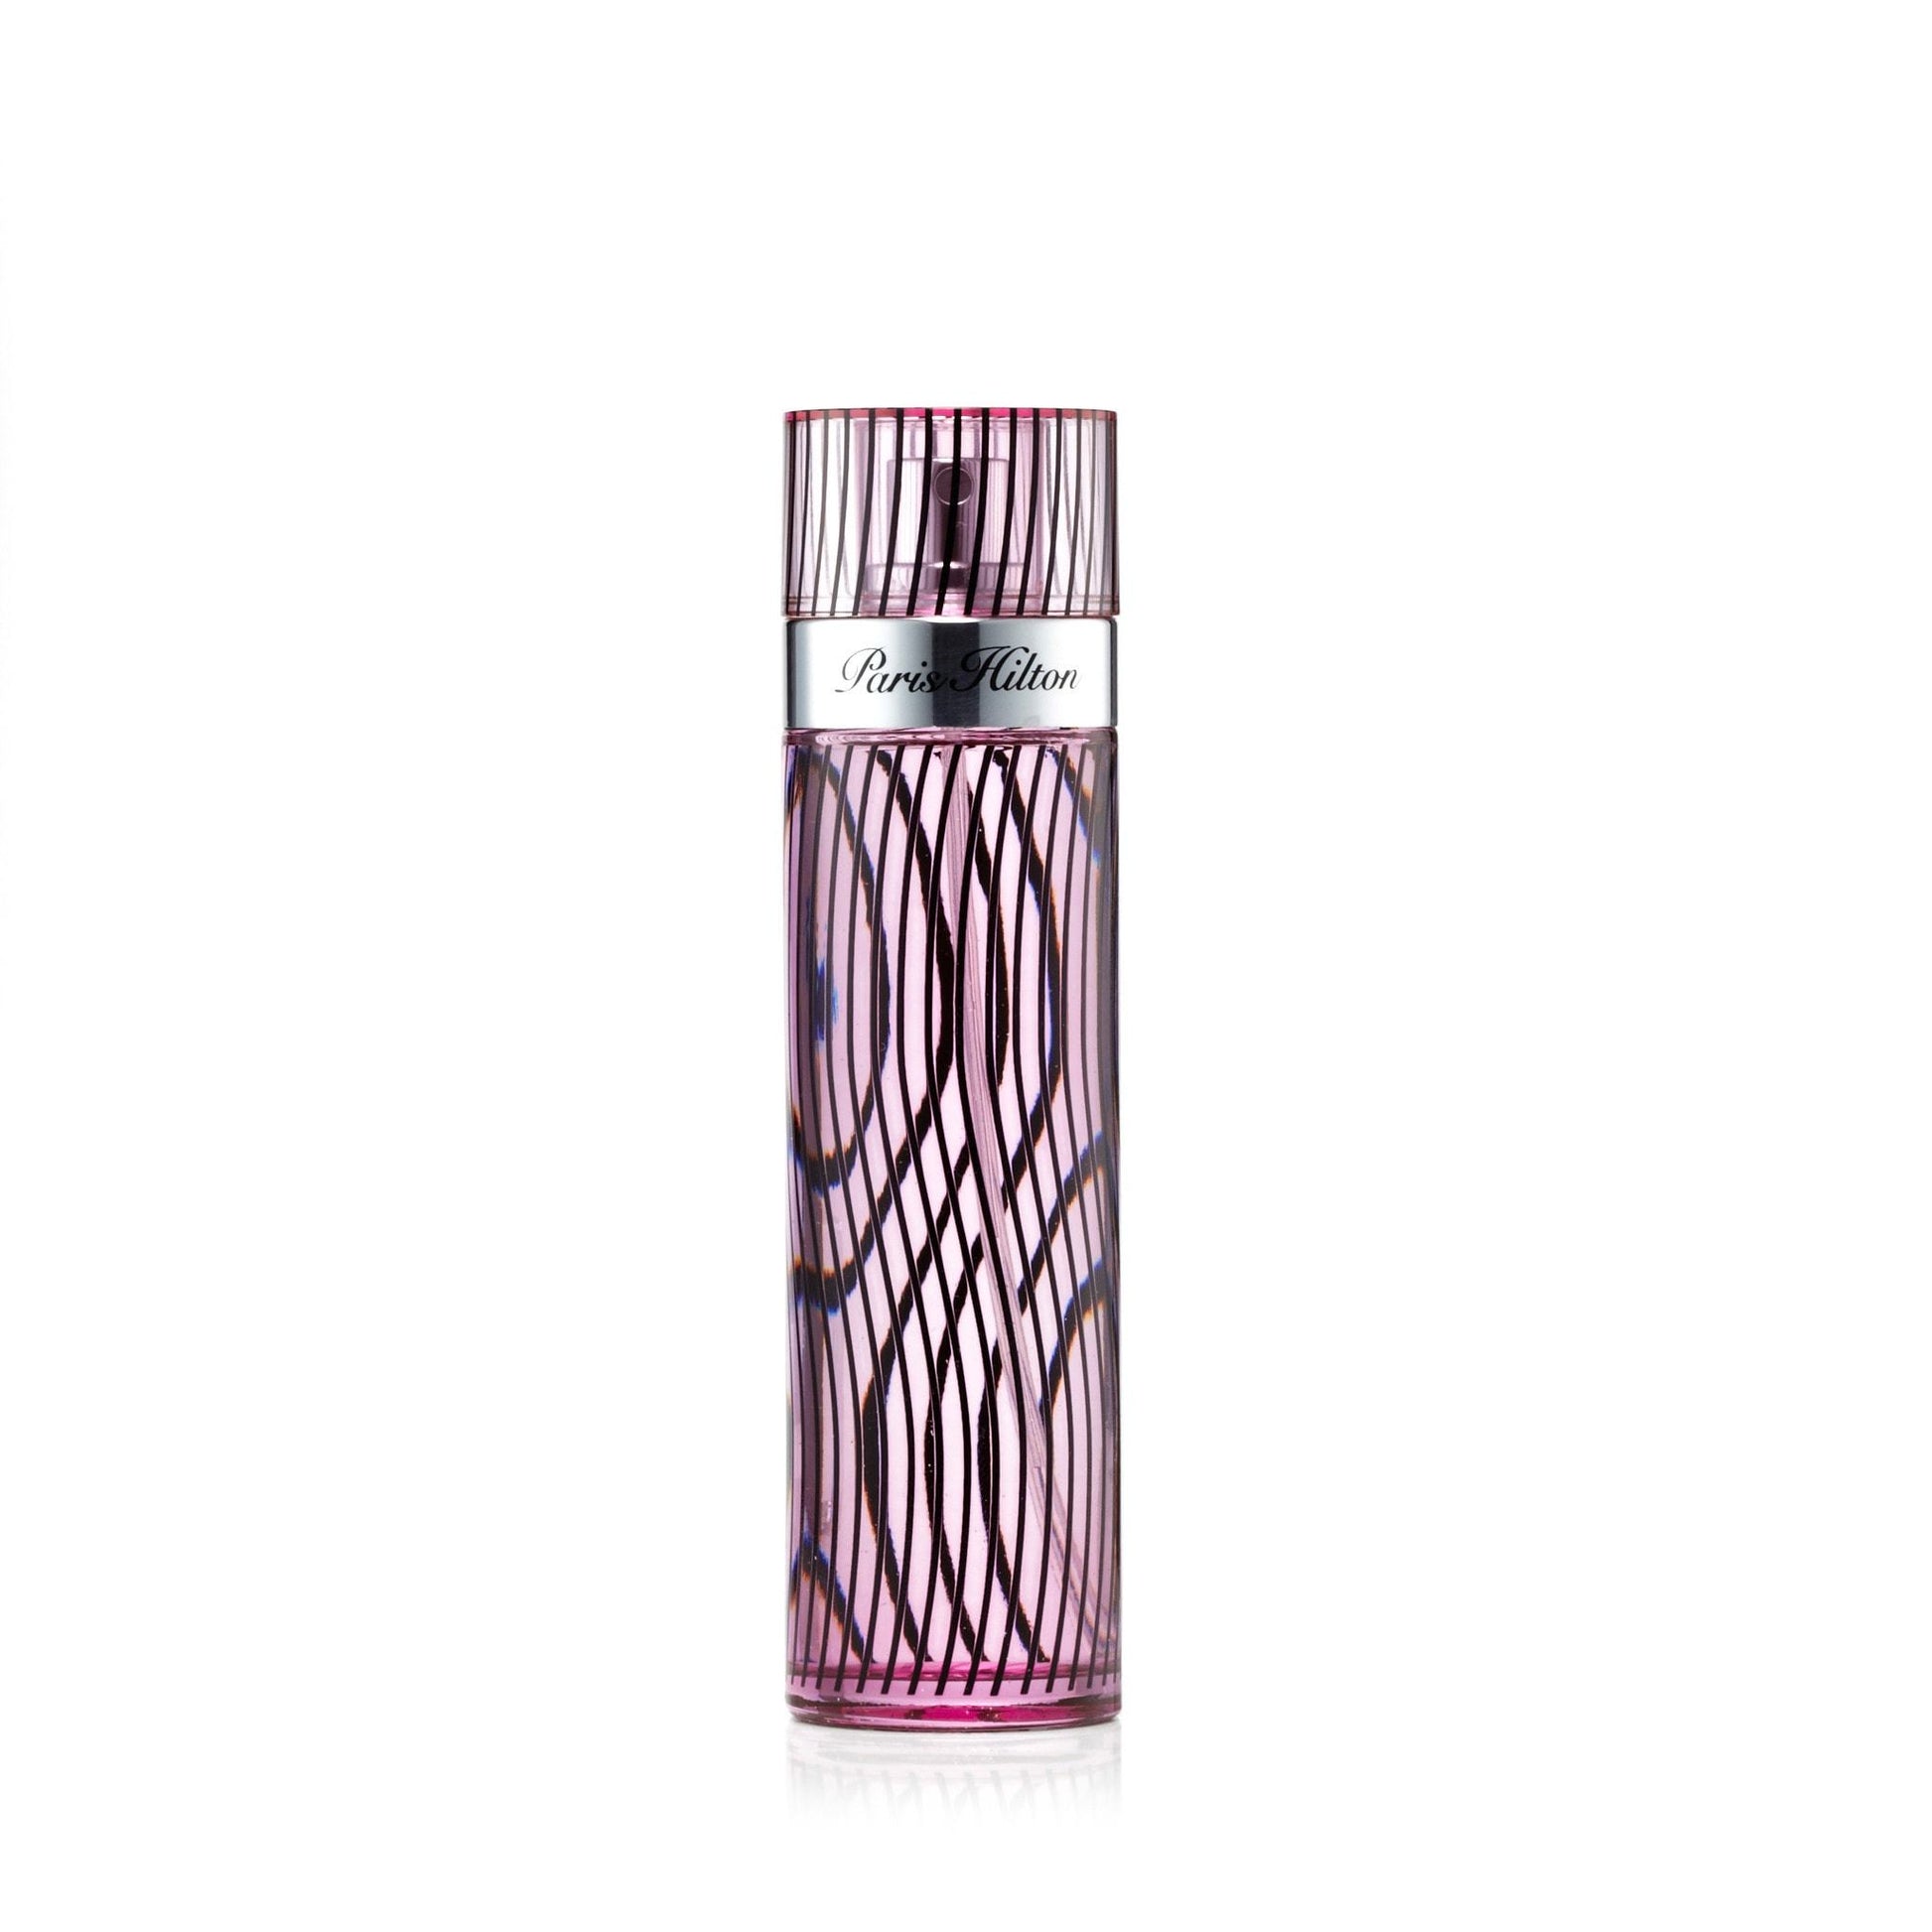 Paris Hilton Eau de Parfum Spray for Women by Paris Hilton, Product image 1